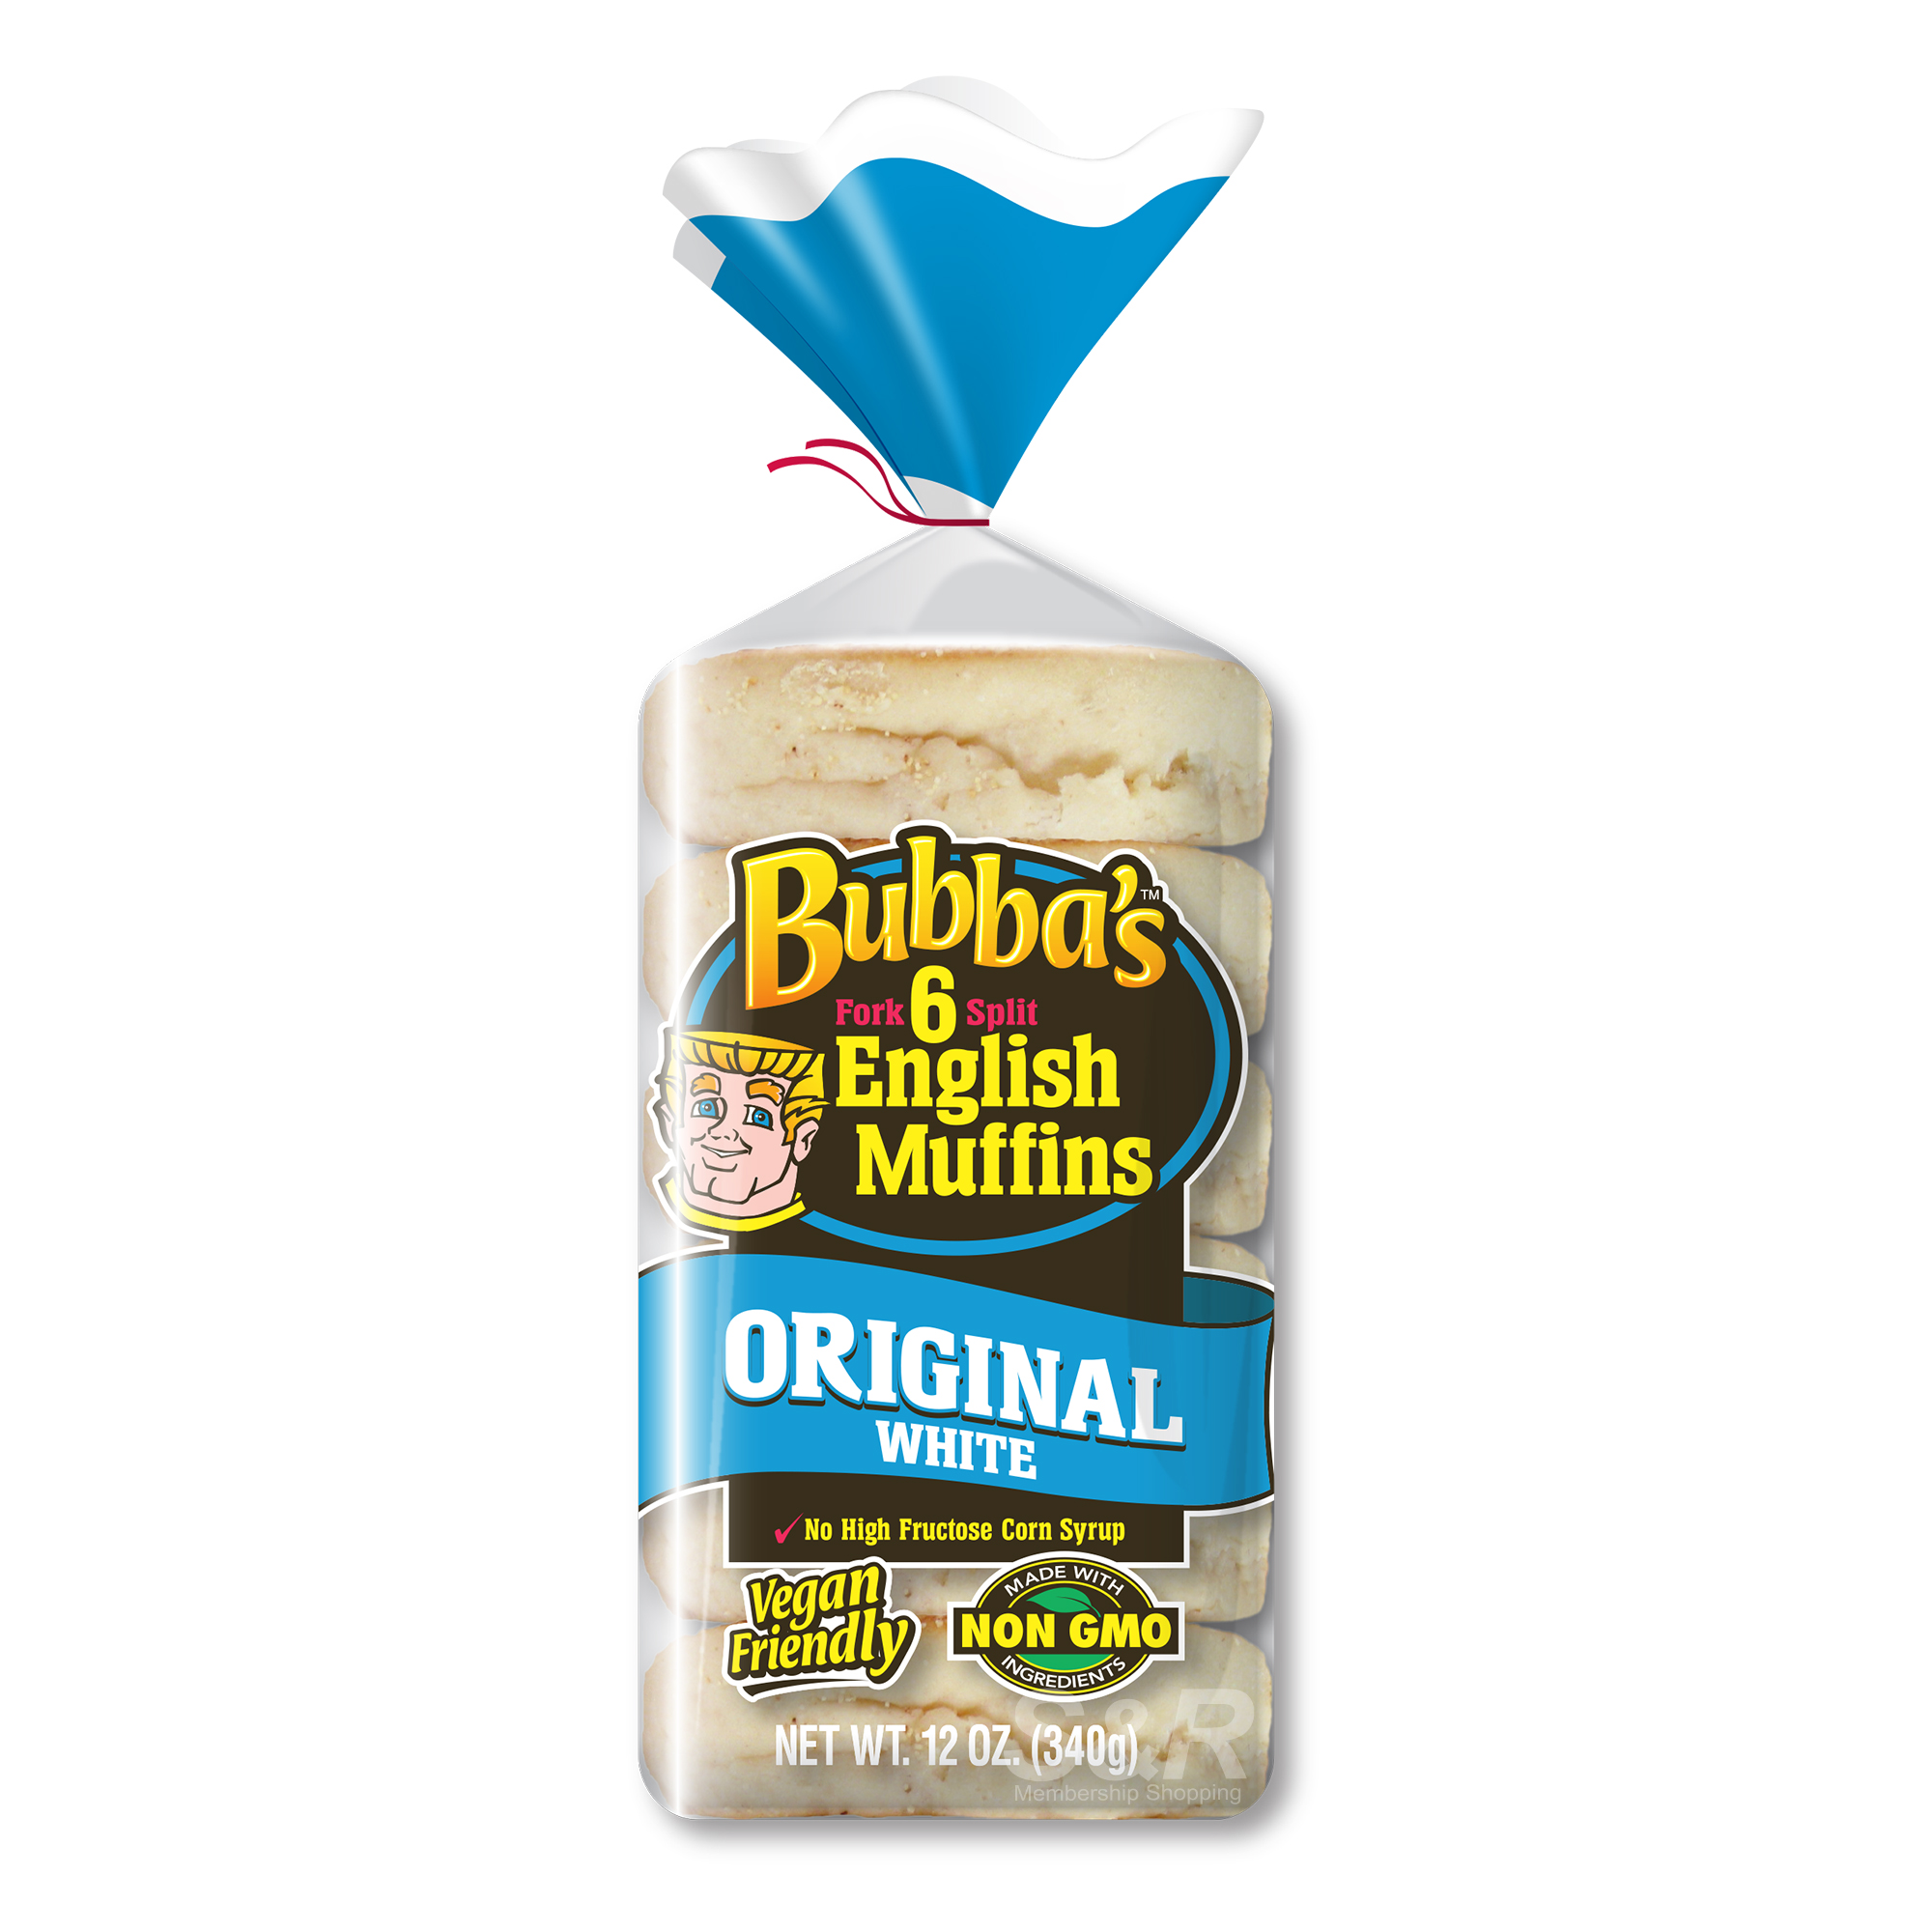 Bubba's English Muffins Original White 6pcs